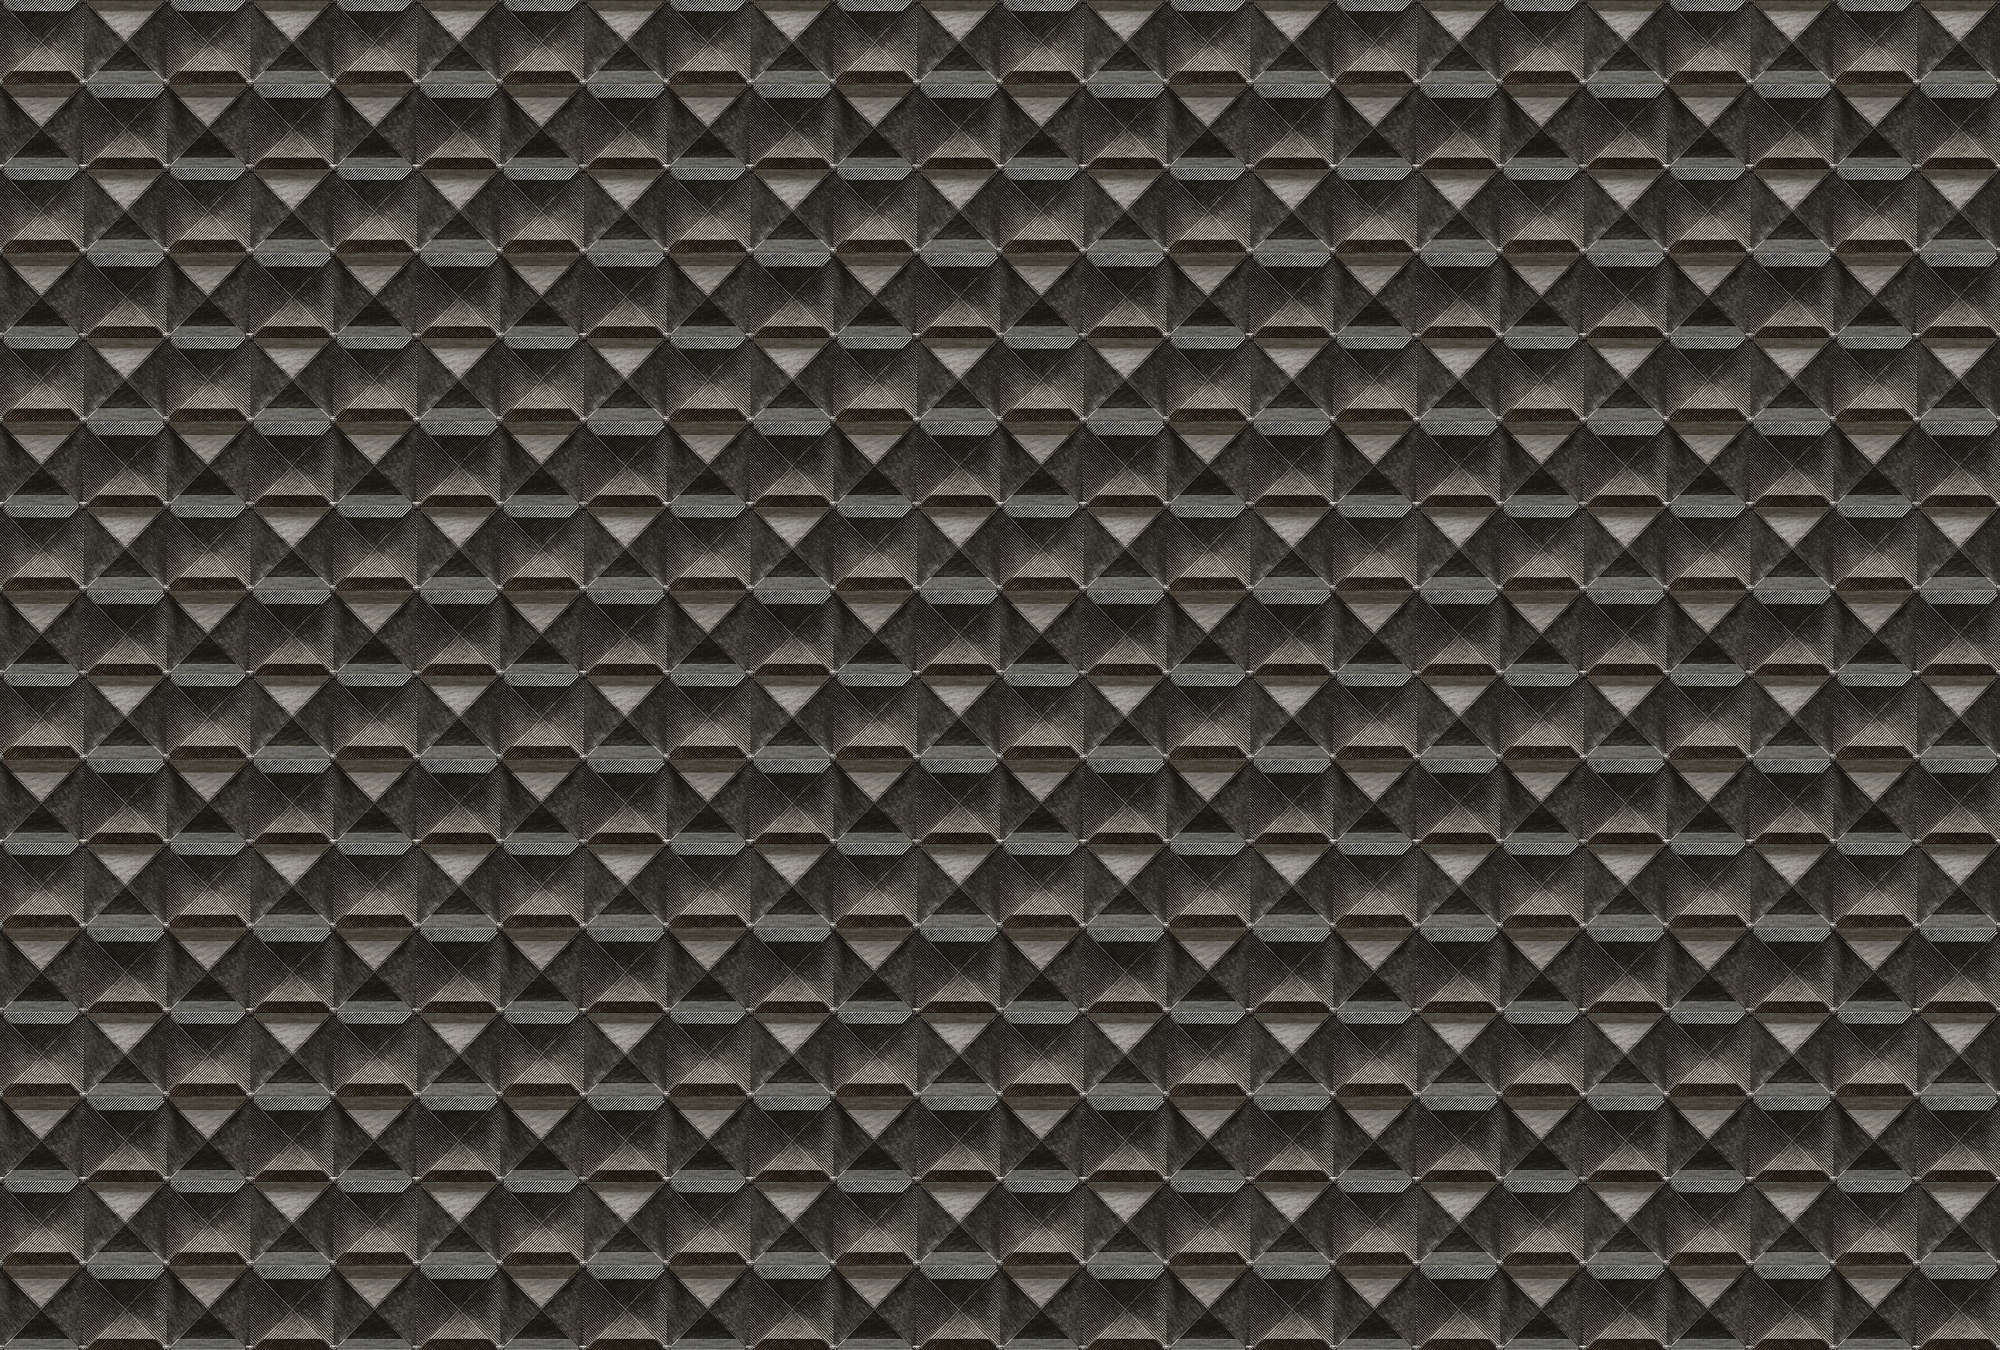             The edge 1 - Mural 3D con diseño de rombos metálicos - Marrón, Negro | Tejido sin tejer texturizado
        